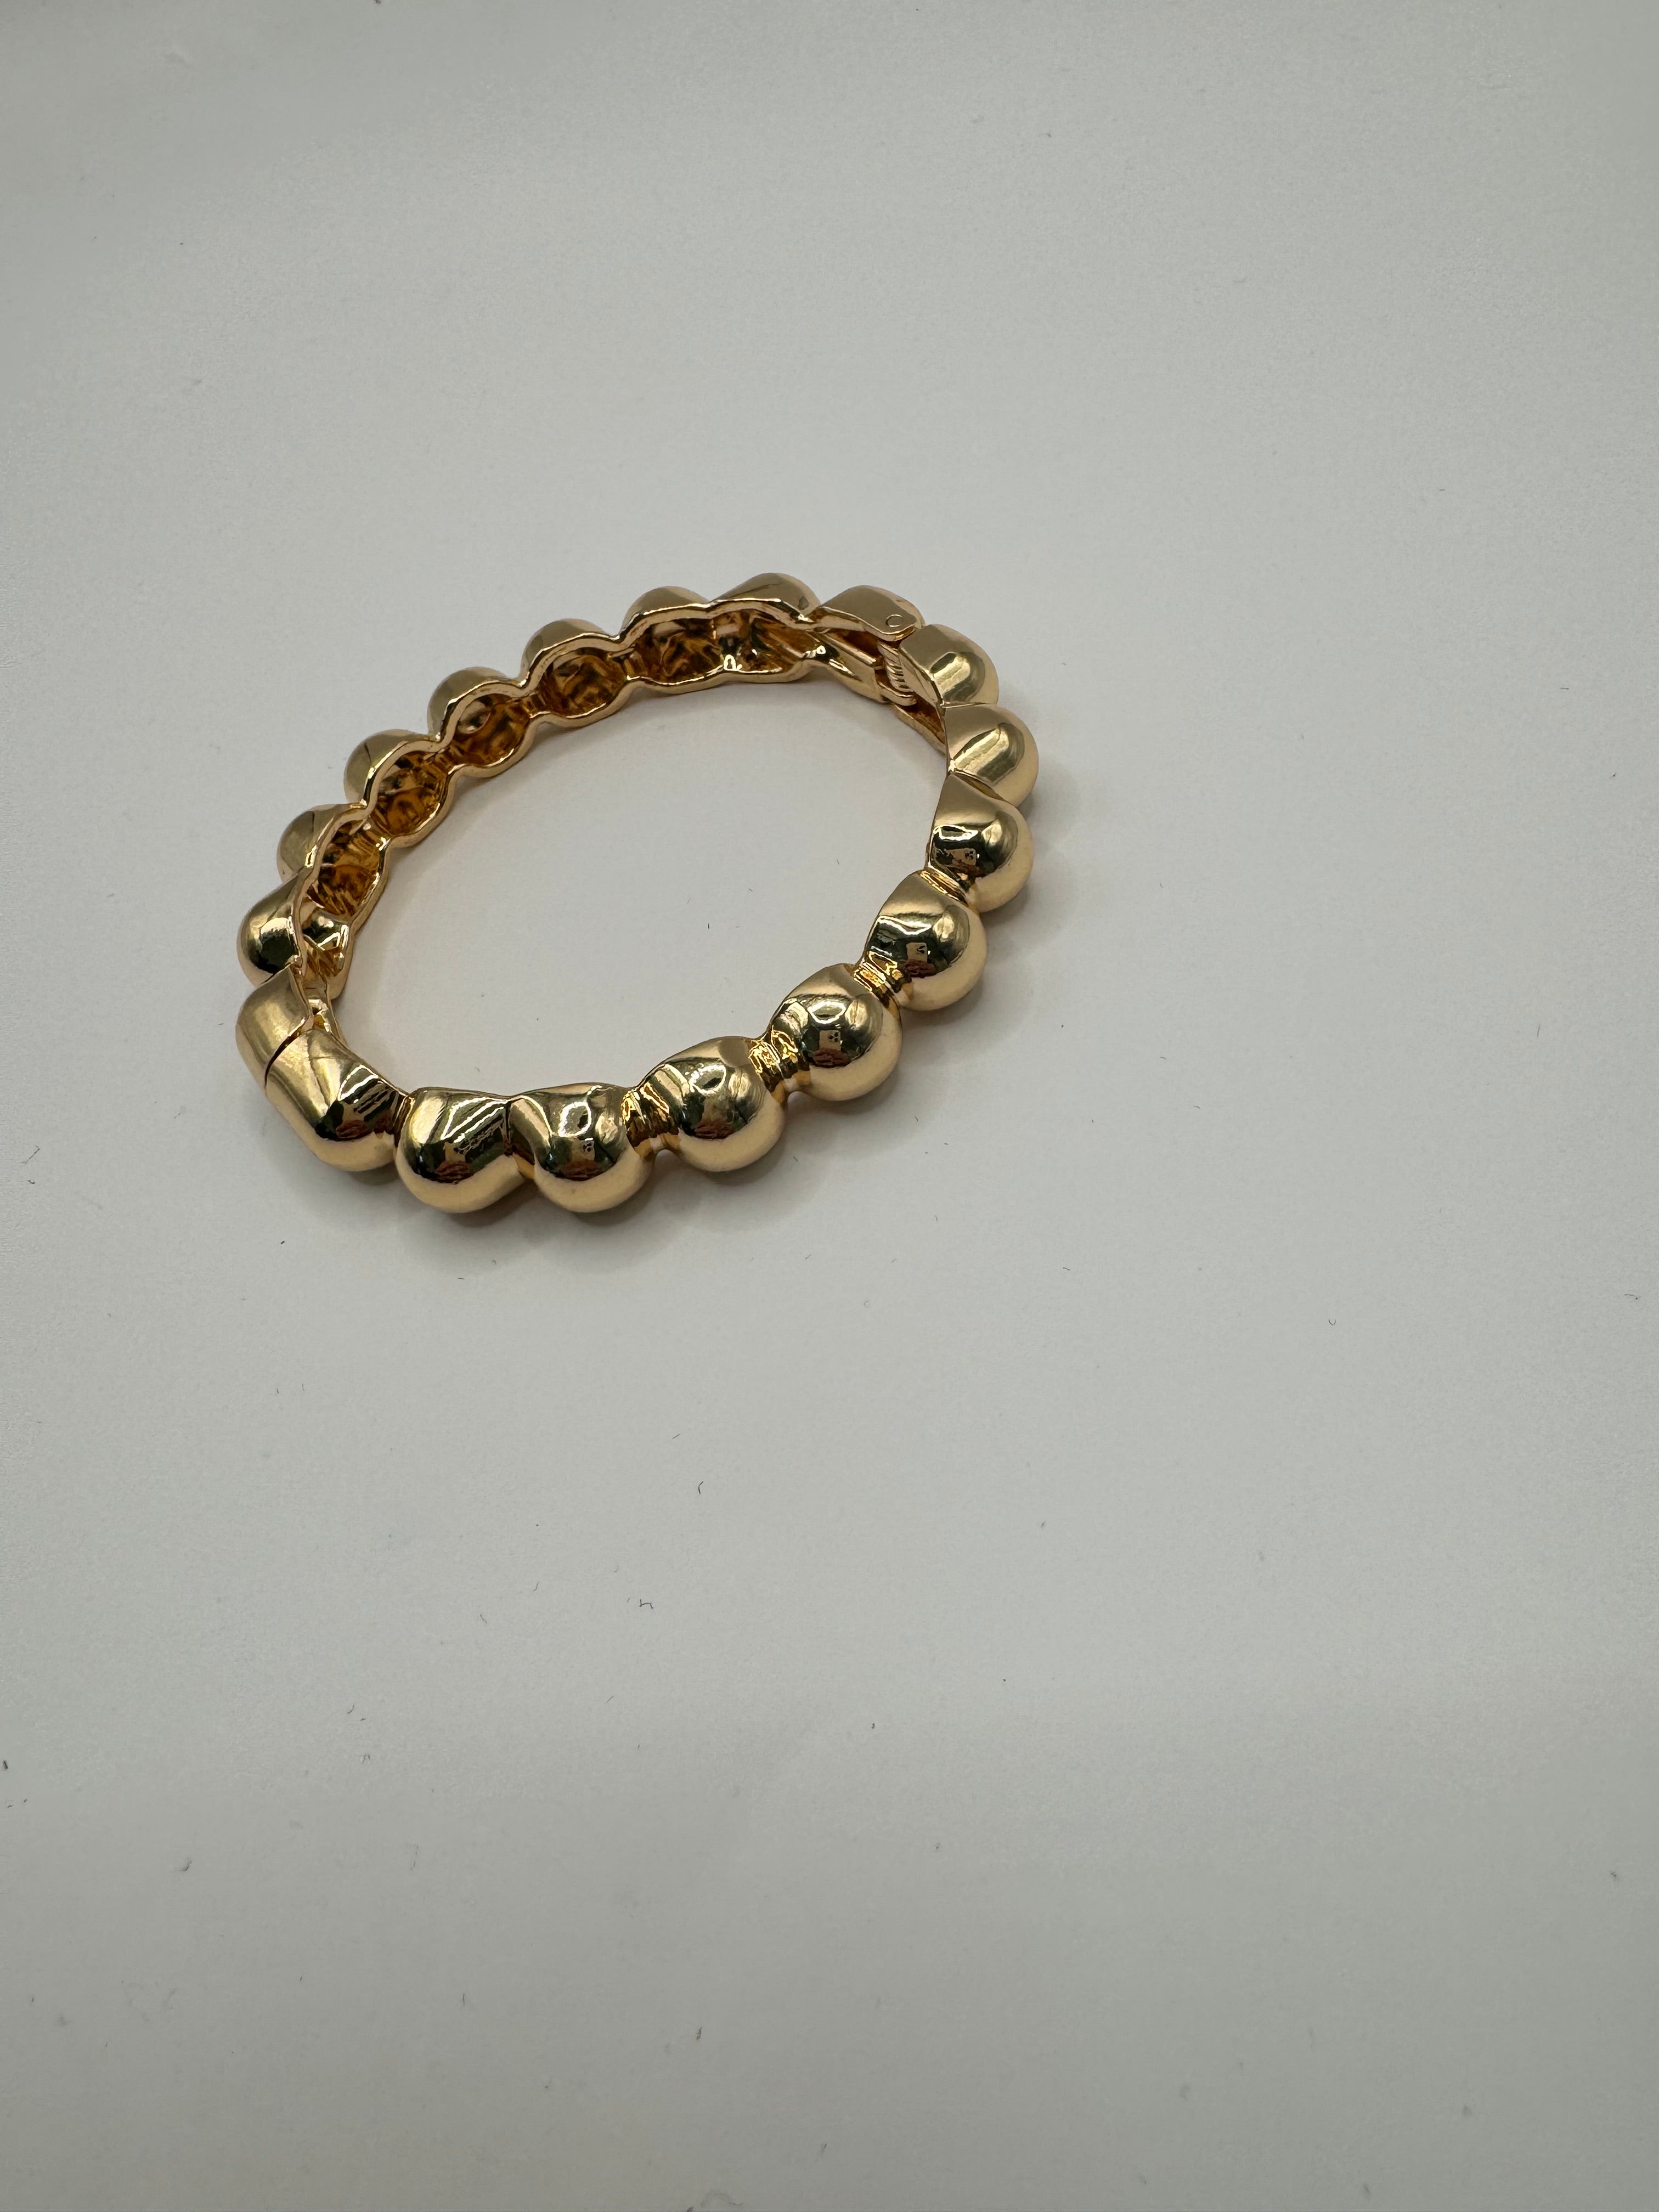 Studded Bangle Bracelet (silver and gold)